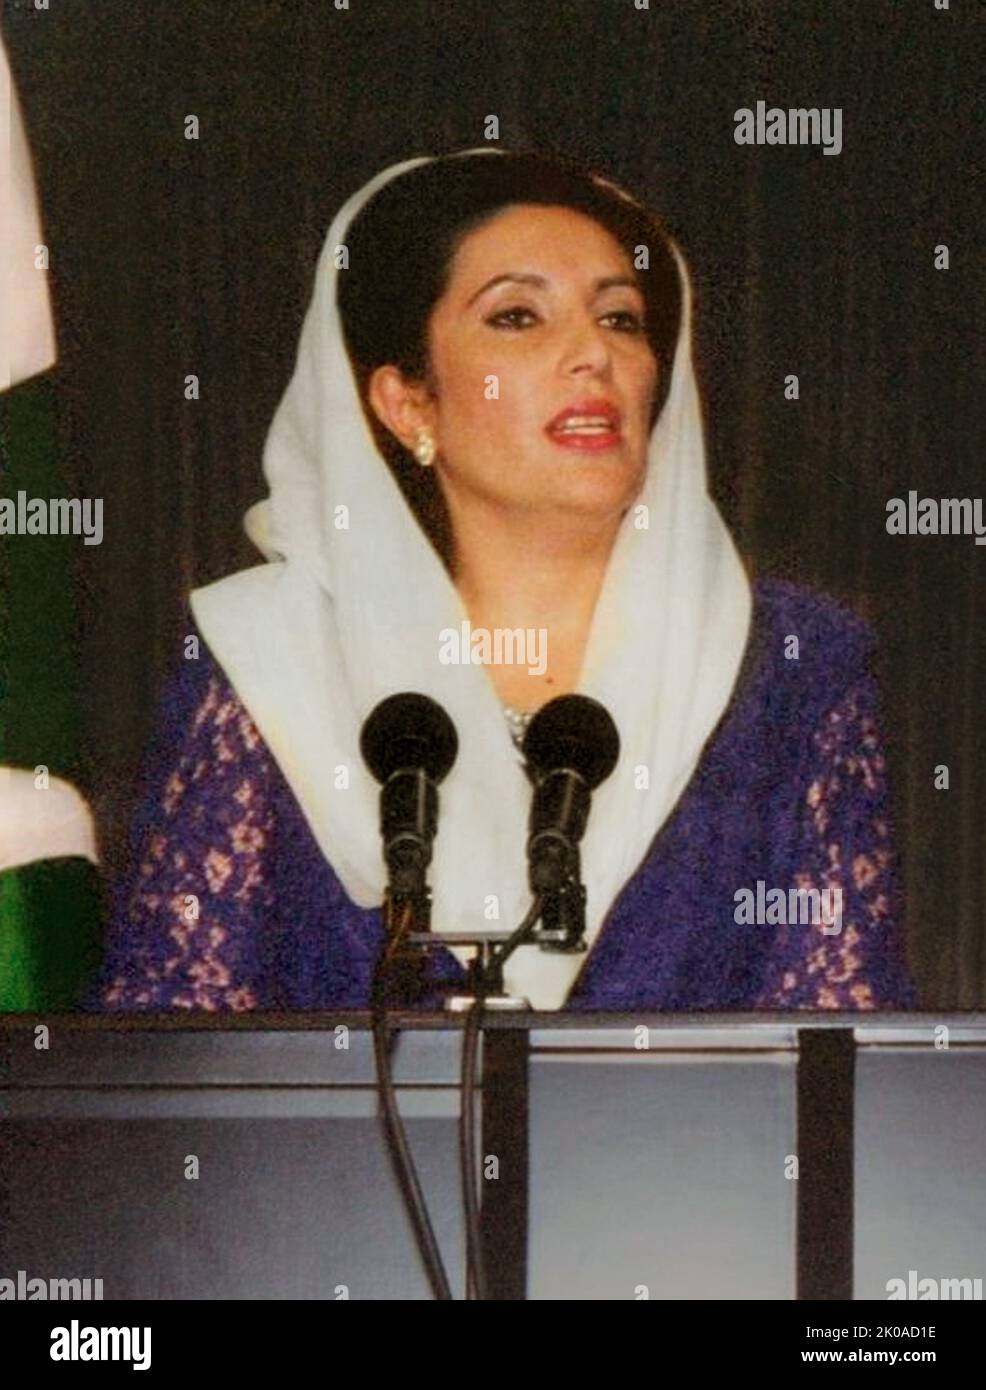 Benazir Bhutto (1953 - 2007) pakistanischer Politiker, der von 1988 bis 1990 und von 1993 bis 1996 als pakistanischer Premierminister von 11. und 13. diente. Sie war die erste Frau, die eine demokratische Regierung in einem mehrheitlich muslimischen Land leitete. Ideologisch gesehen ist sie liberal und säkularistisch und hatte von Anfang 1980s bis zu ihrer Tötung im Jahr 2007 den Vorsitz der Pakistanischen Volkspartei (PPP) oder den Ko-Vorsitz Stockfoto